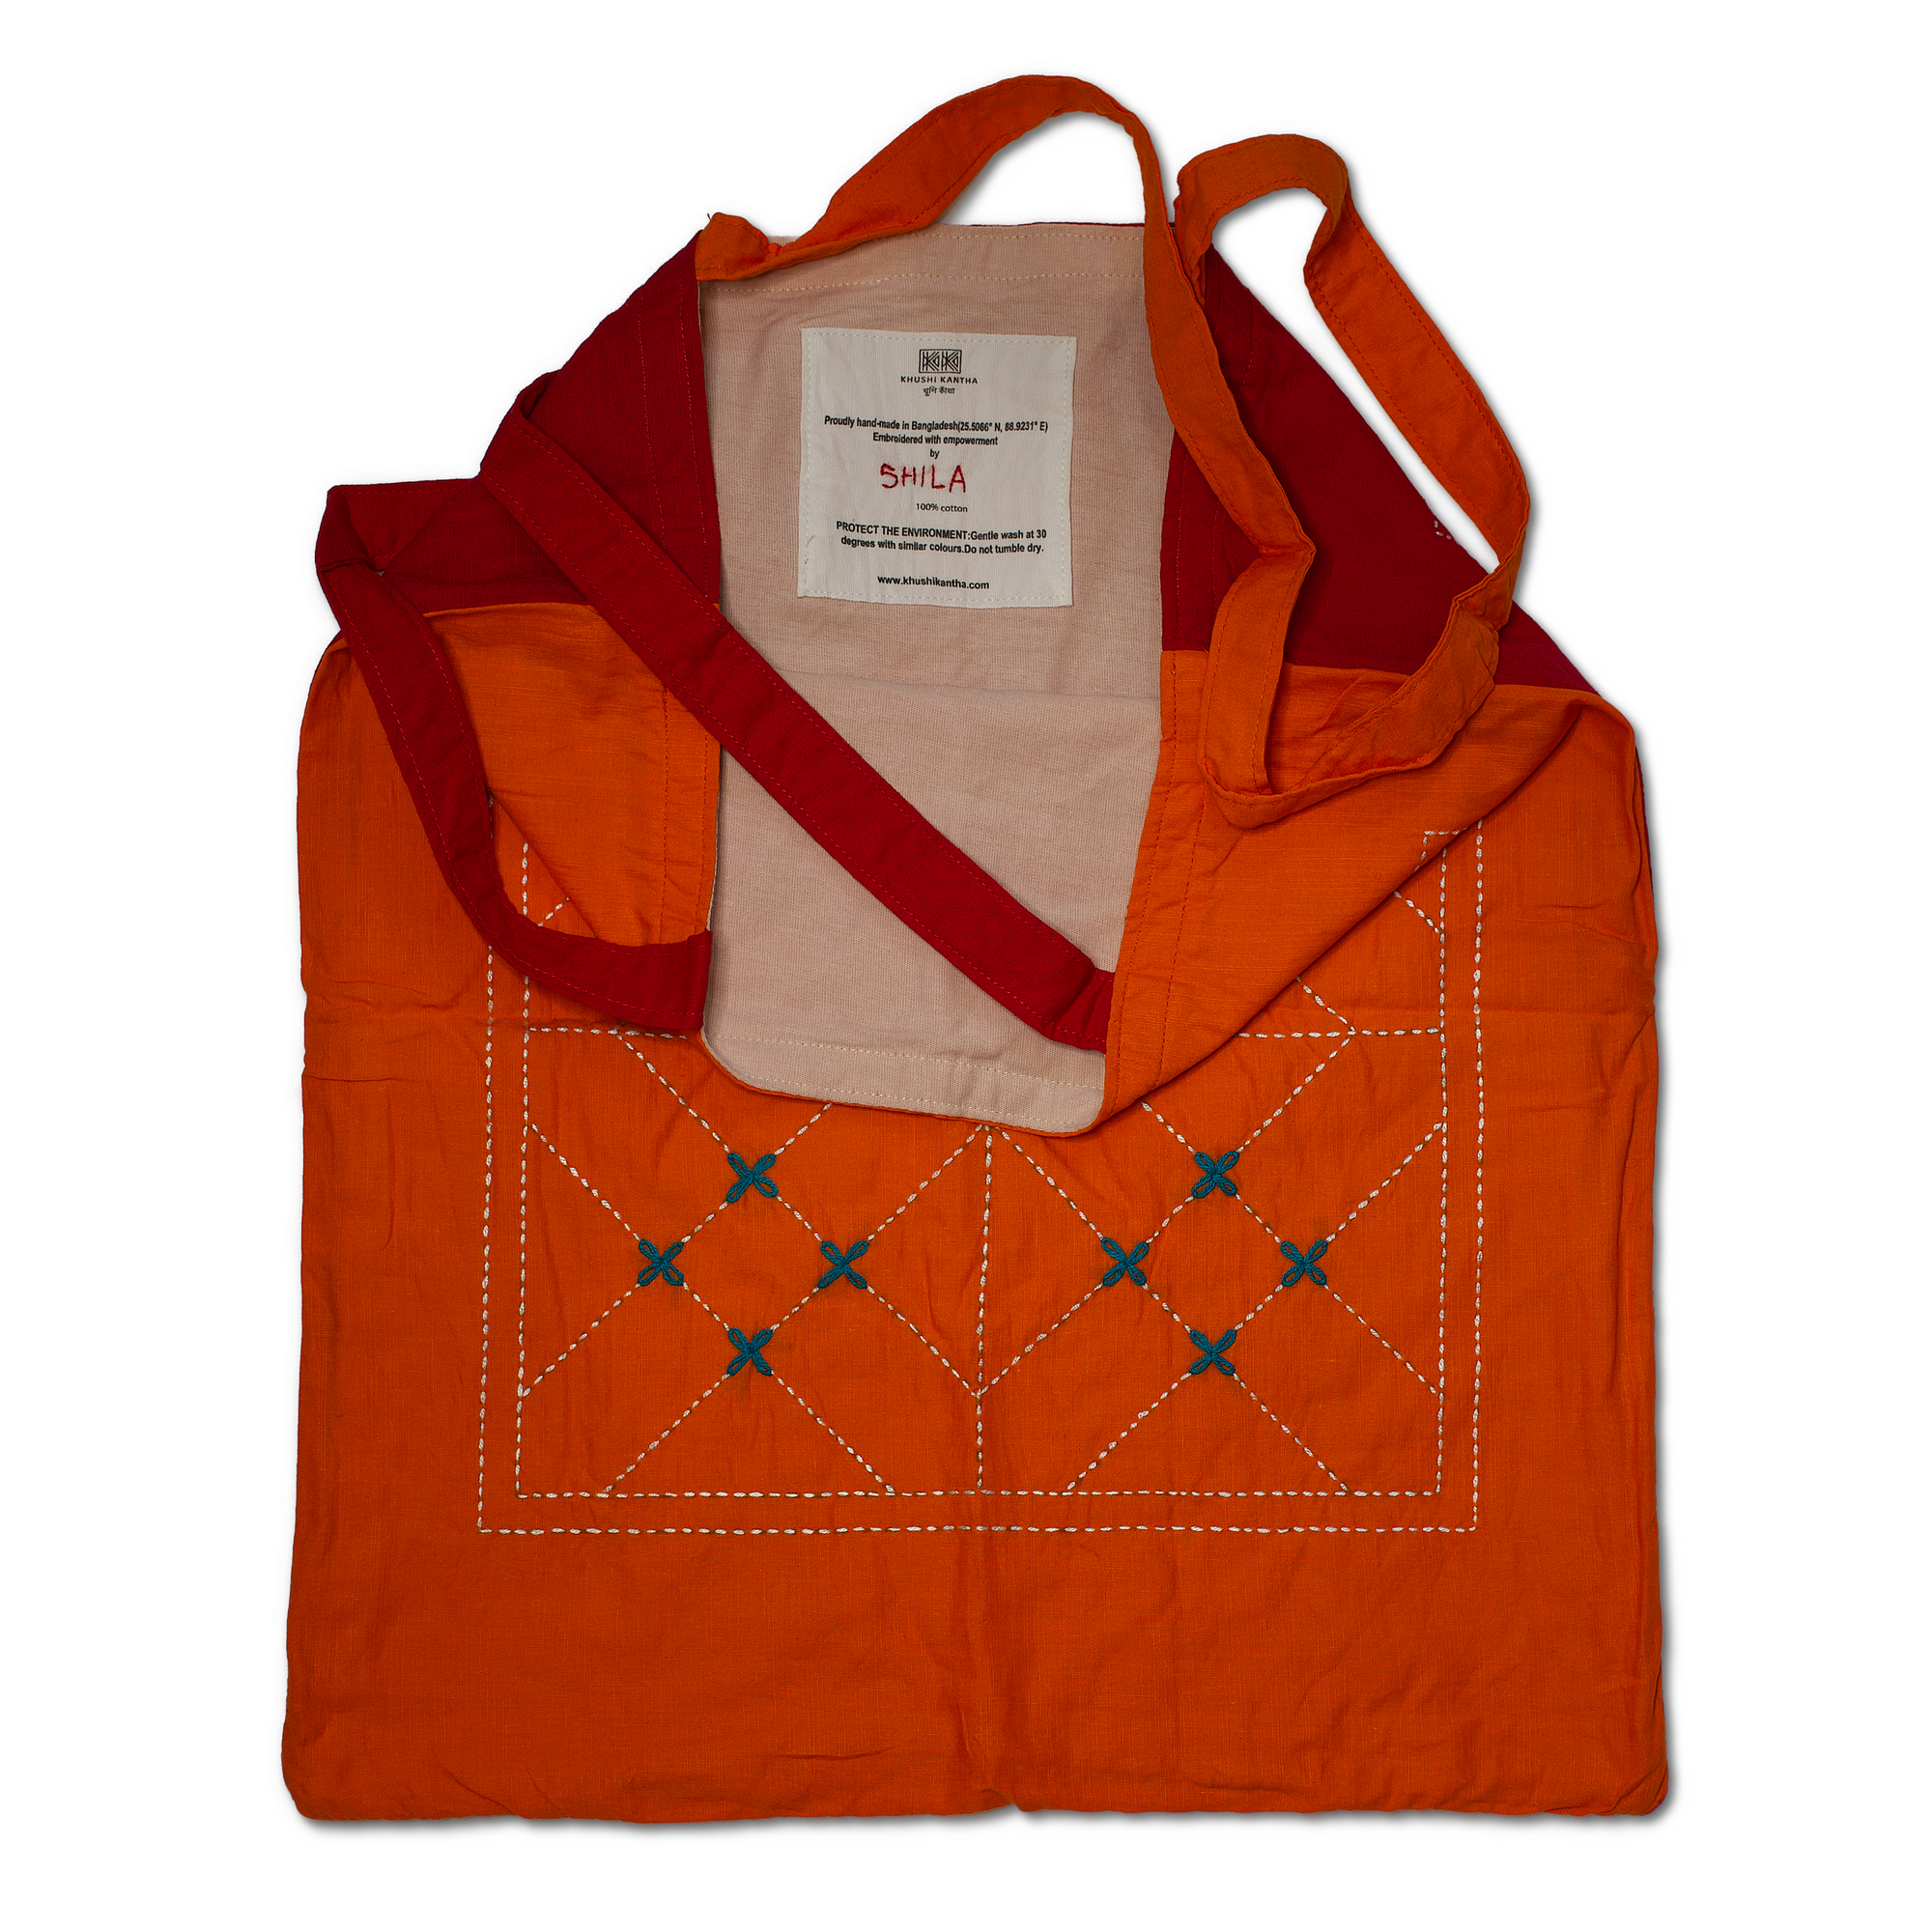 Tote Bags - Kurigram (geometric) Design - Sumi (Red) / Asif (Orange)